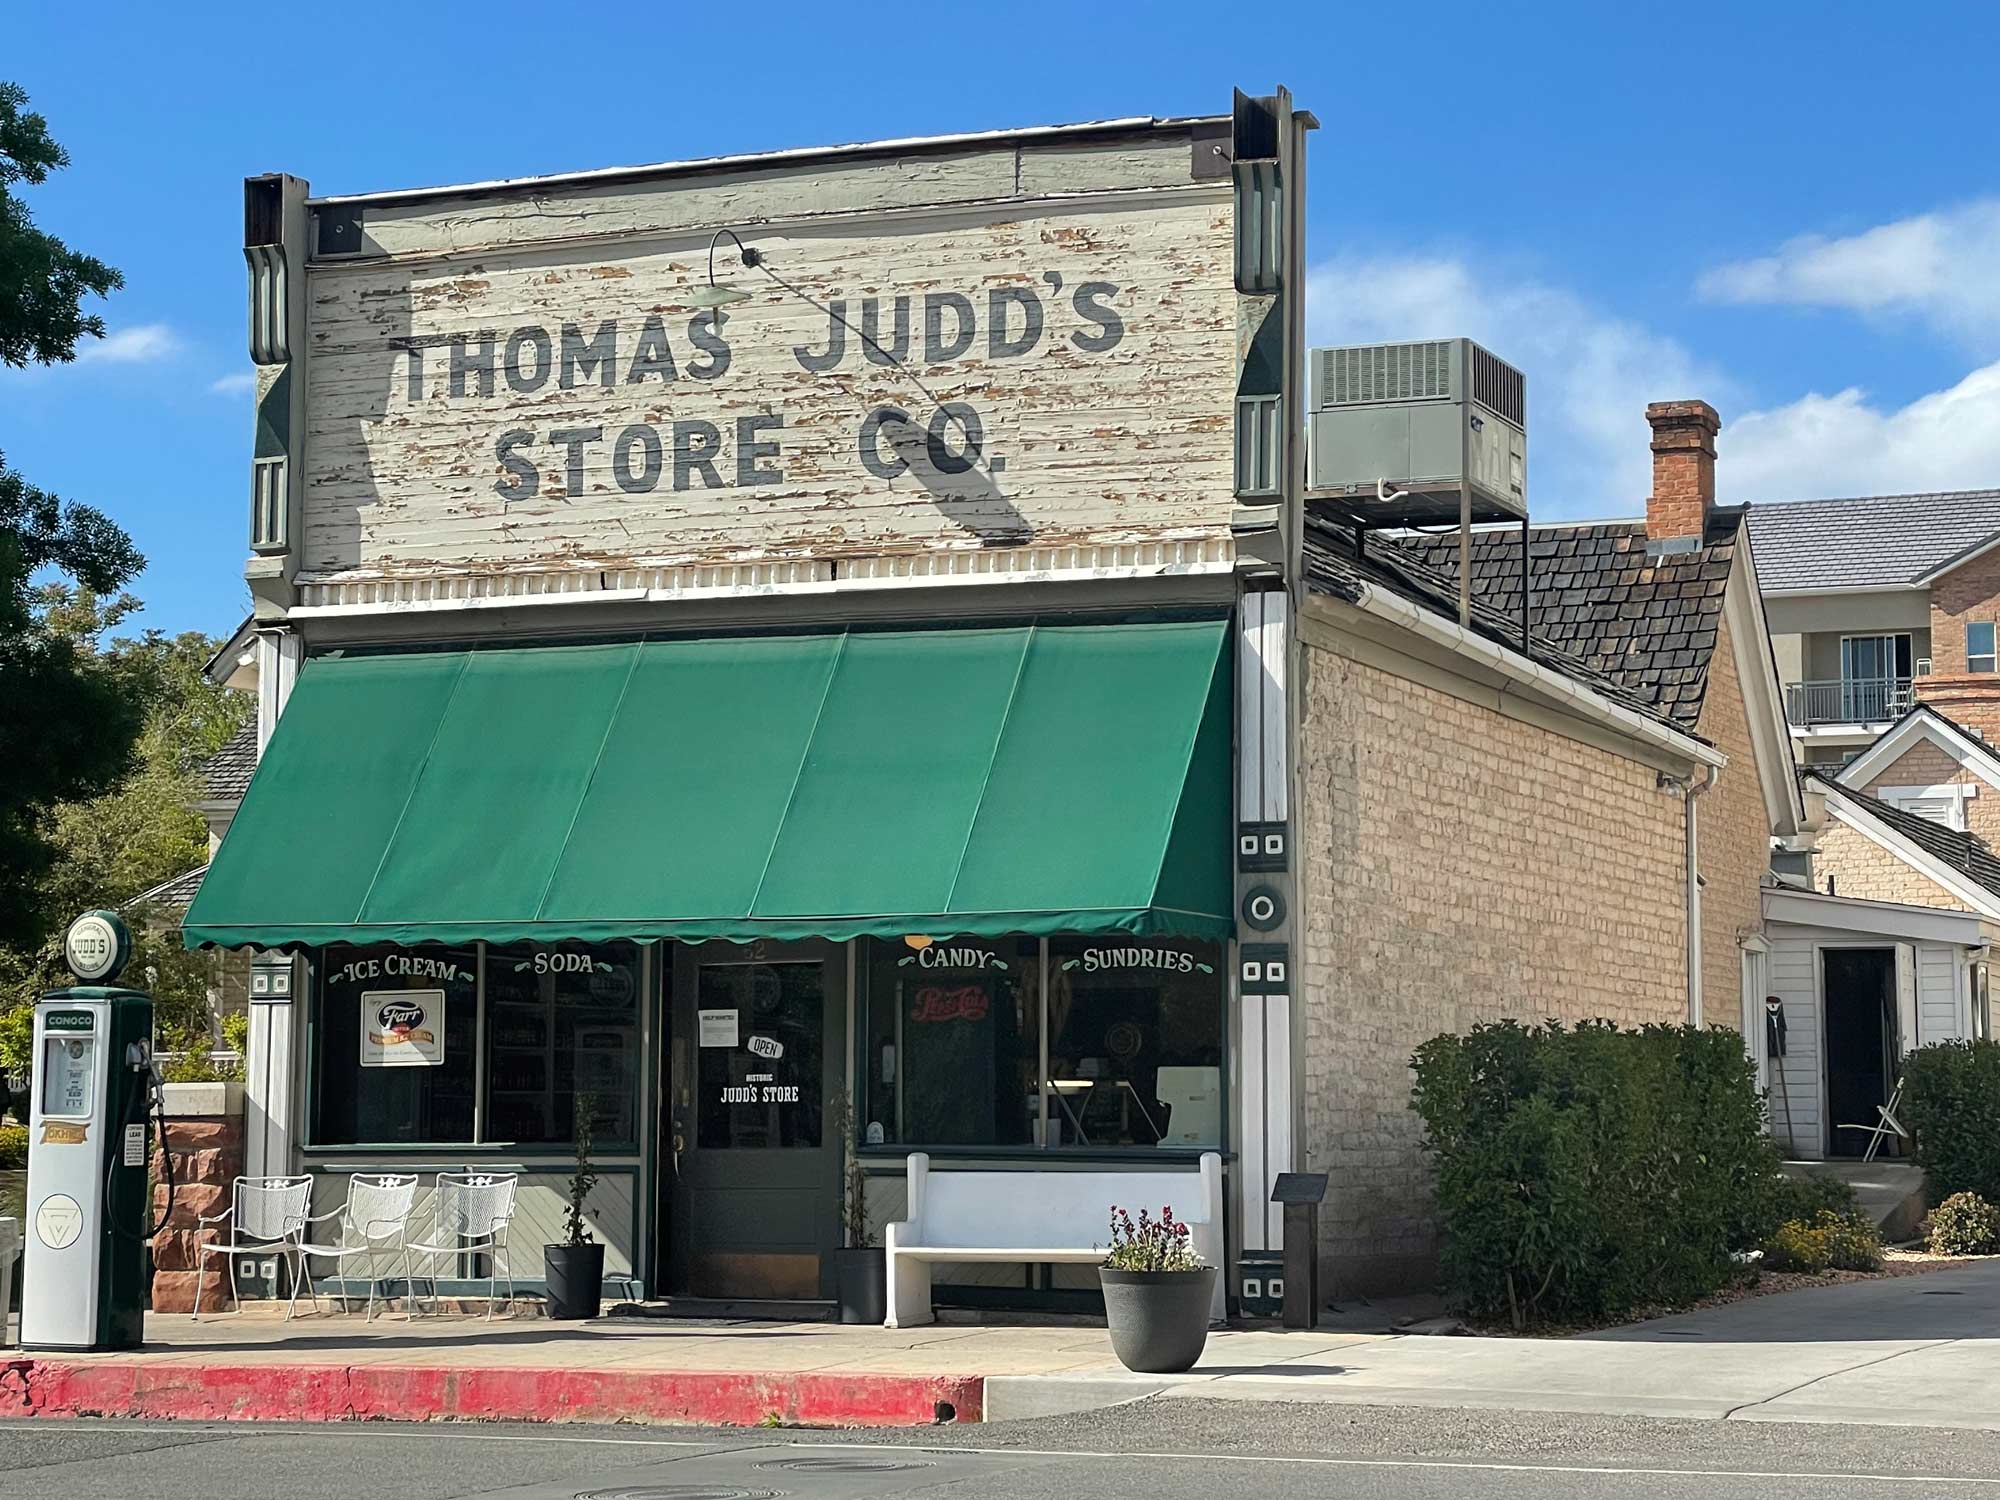 Judds Store